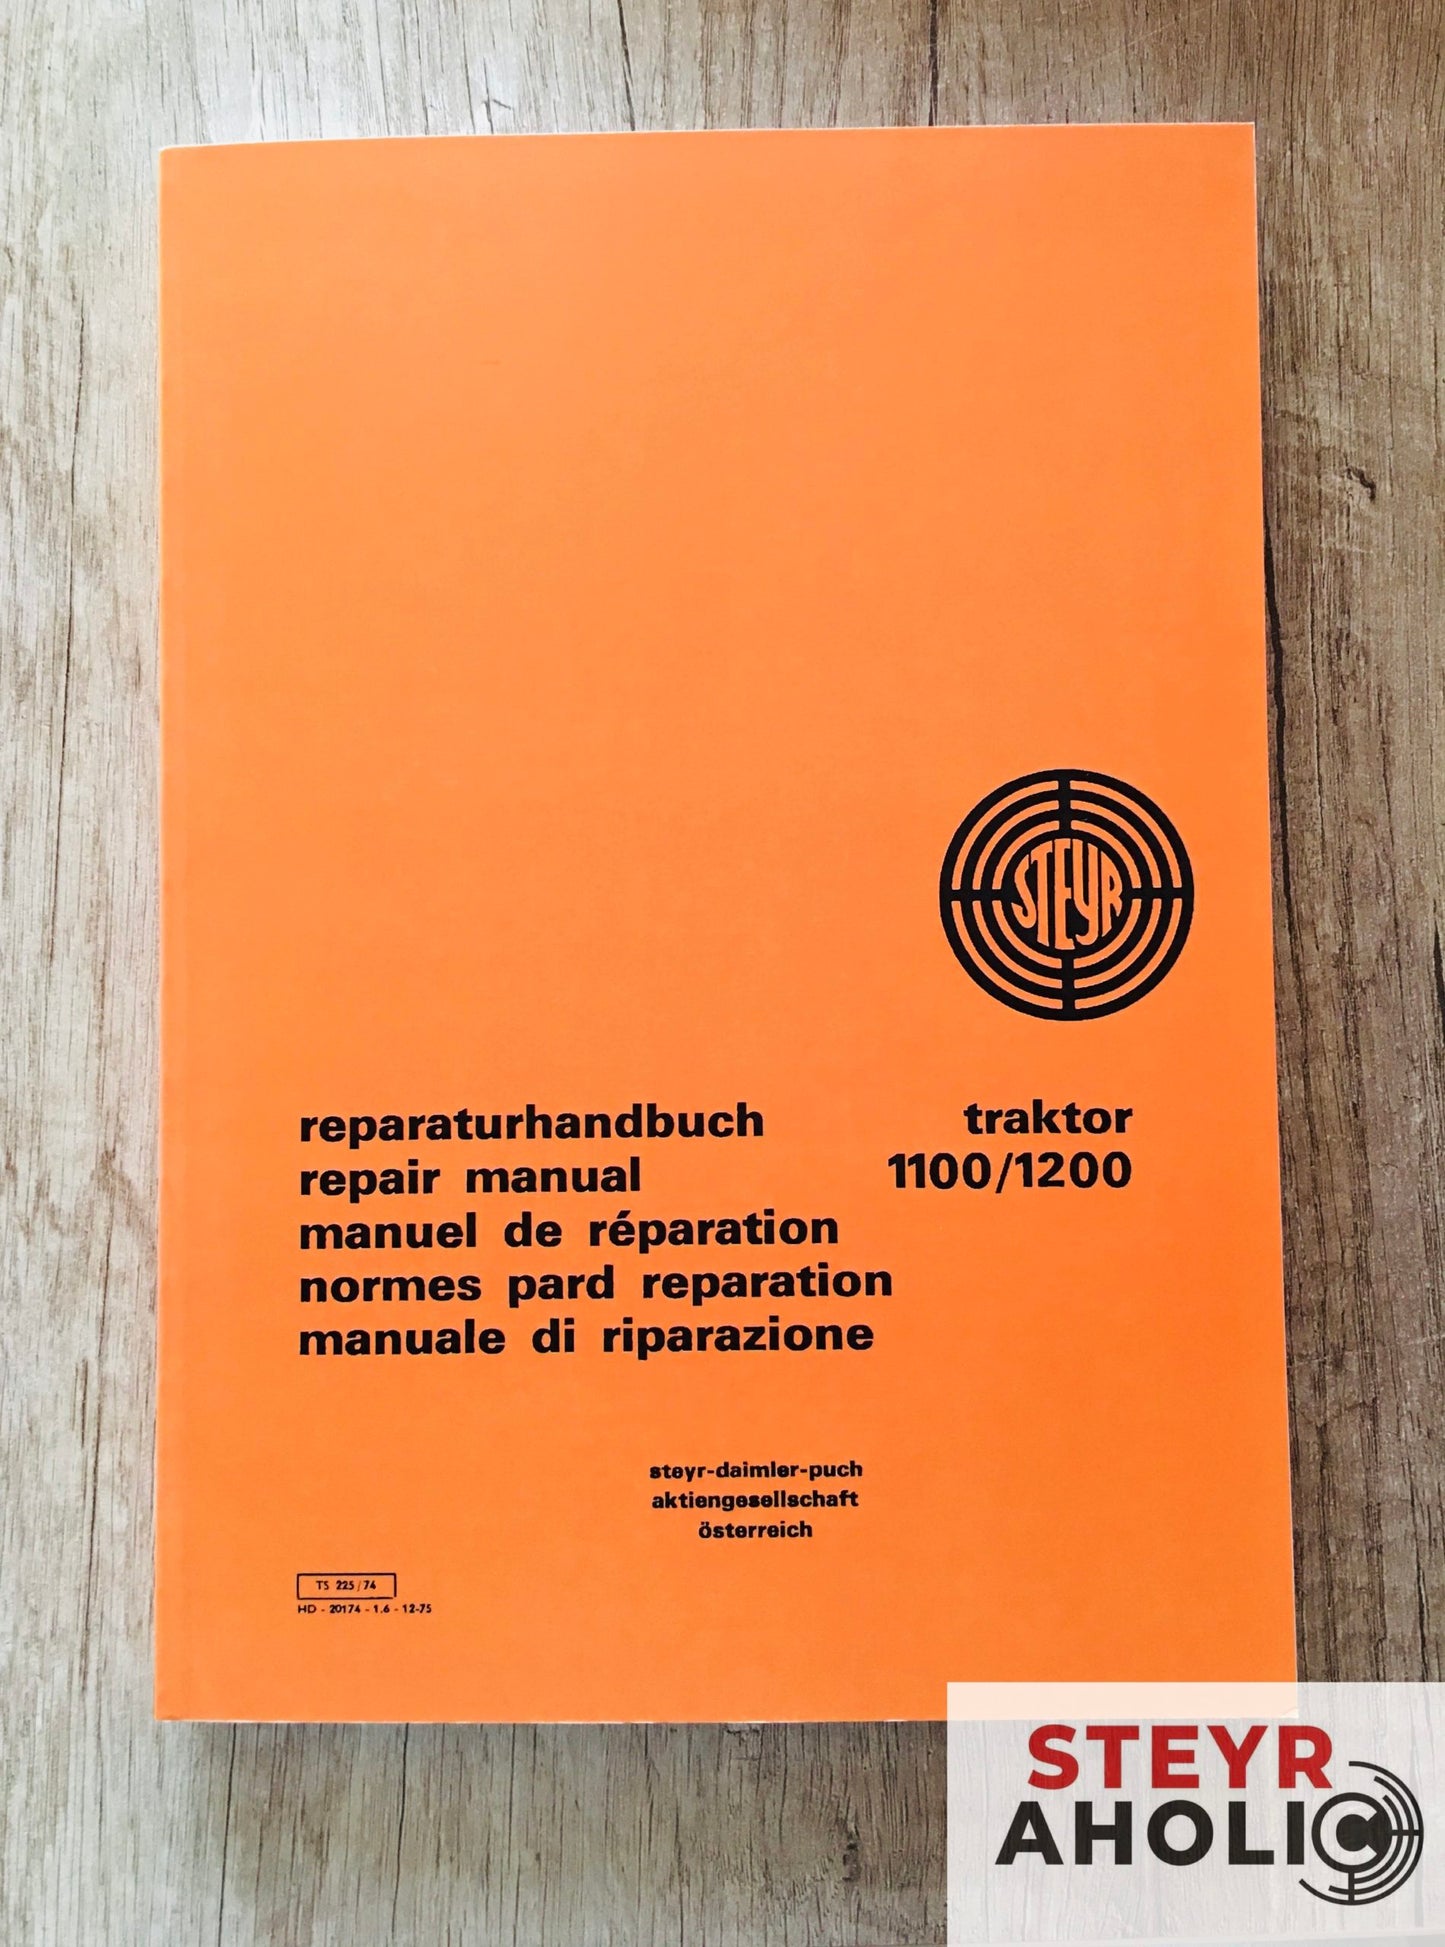 Reparaturhandbuch Steyr 1100/1200